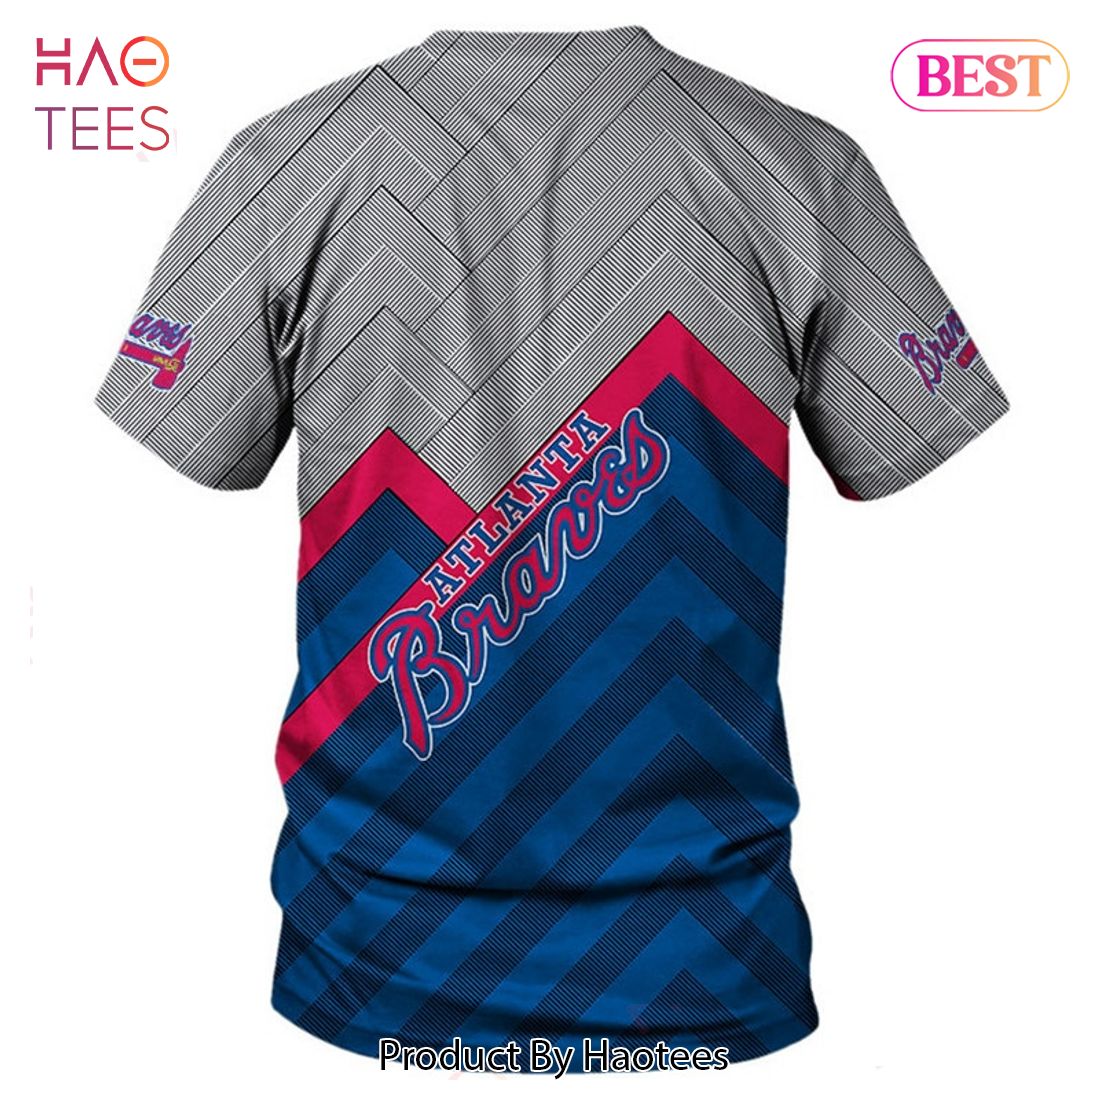 Atlanta Braves T-Shirt Design Ideas - Custom Atlanta Braves Shirts